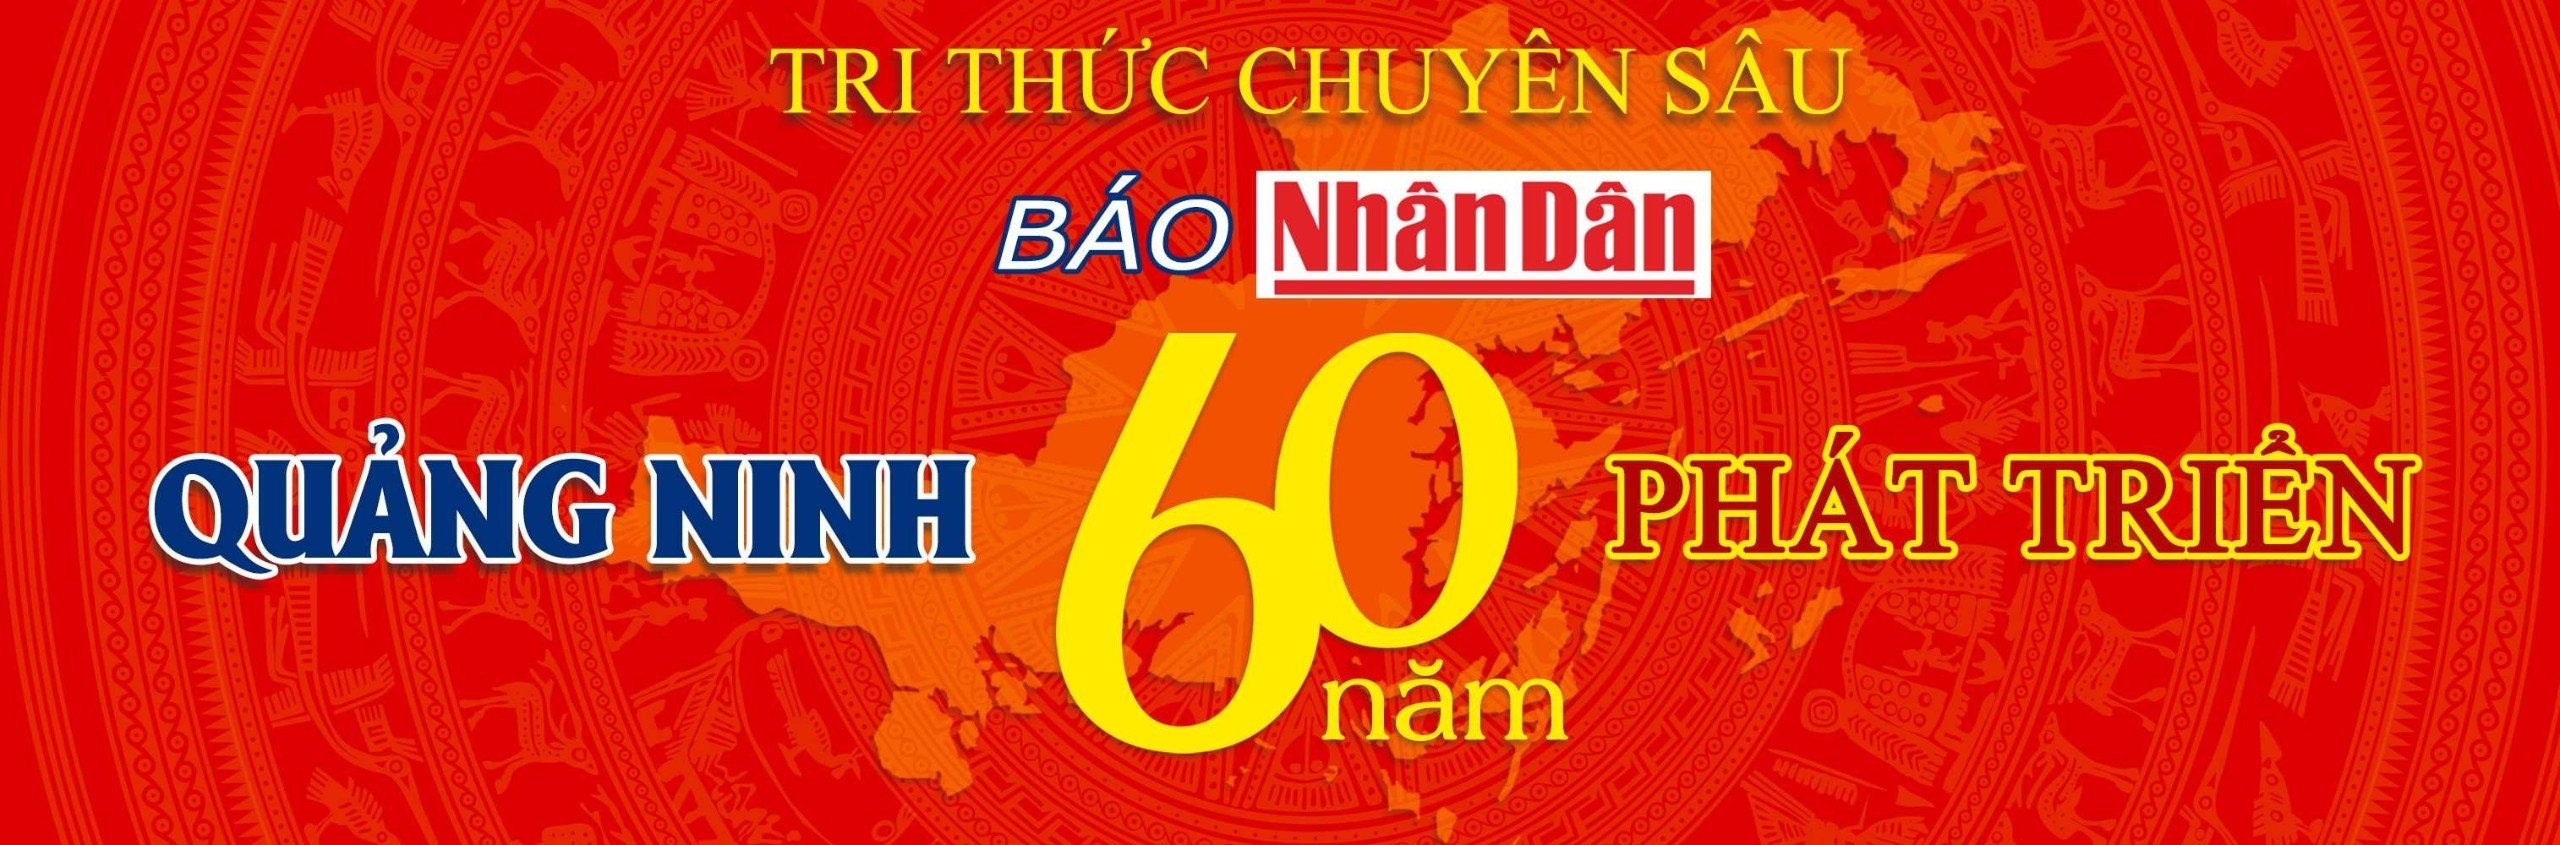 Quảng Ninh: 60 năm phát triển